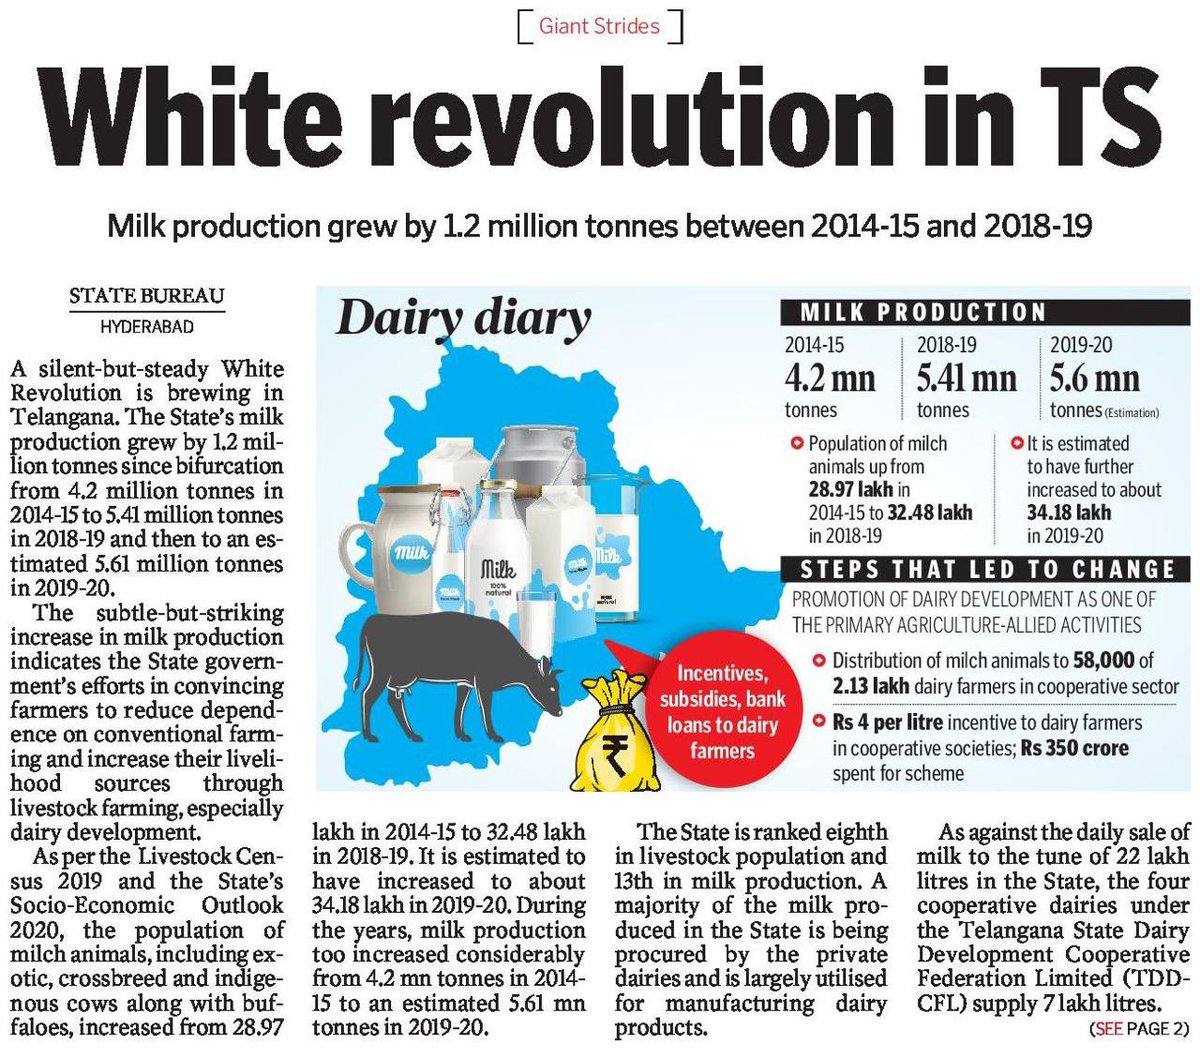  ఇప్పుడు ప్రభుత్వ ప్రోత్సాహంతో నష్టాల నుండి లాభాల్లోకి డెయిరీ పరిశ్రమ. Milk production in the state has grown by 1.2 million tonnes b/w 2015 & 2019.Vijaya Dairy run by the TS Govt saw a turnaround from ₹30 Cr loss to ₹31 Cr profit.  #WhiteRevolution...(4/5) @KTRTRS